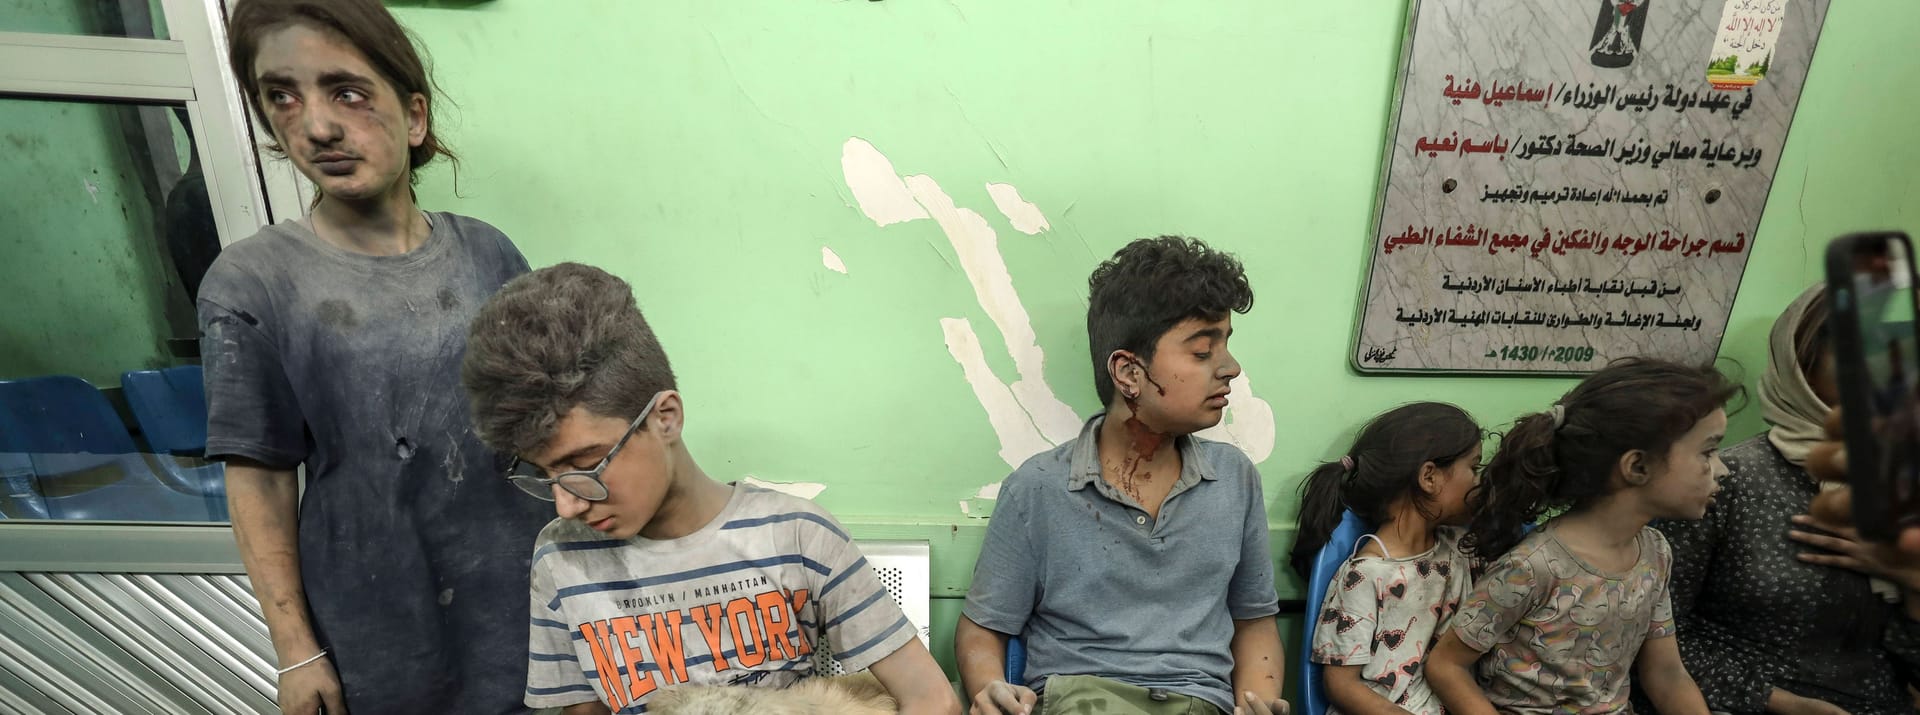 Verletzte Kinder warten auf Behandlung: Die humanitäre Situation in Gaza ist dramatisch.